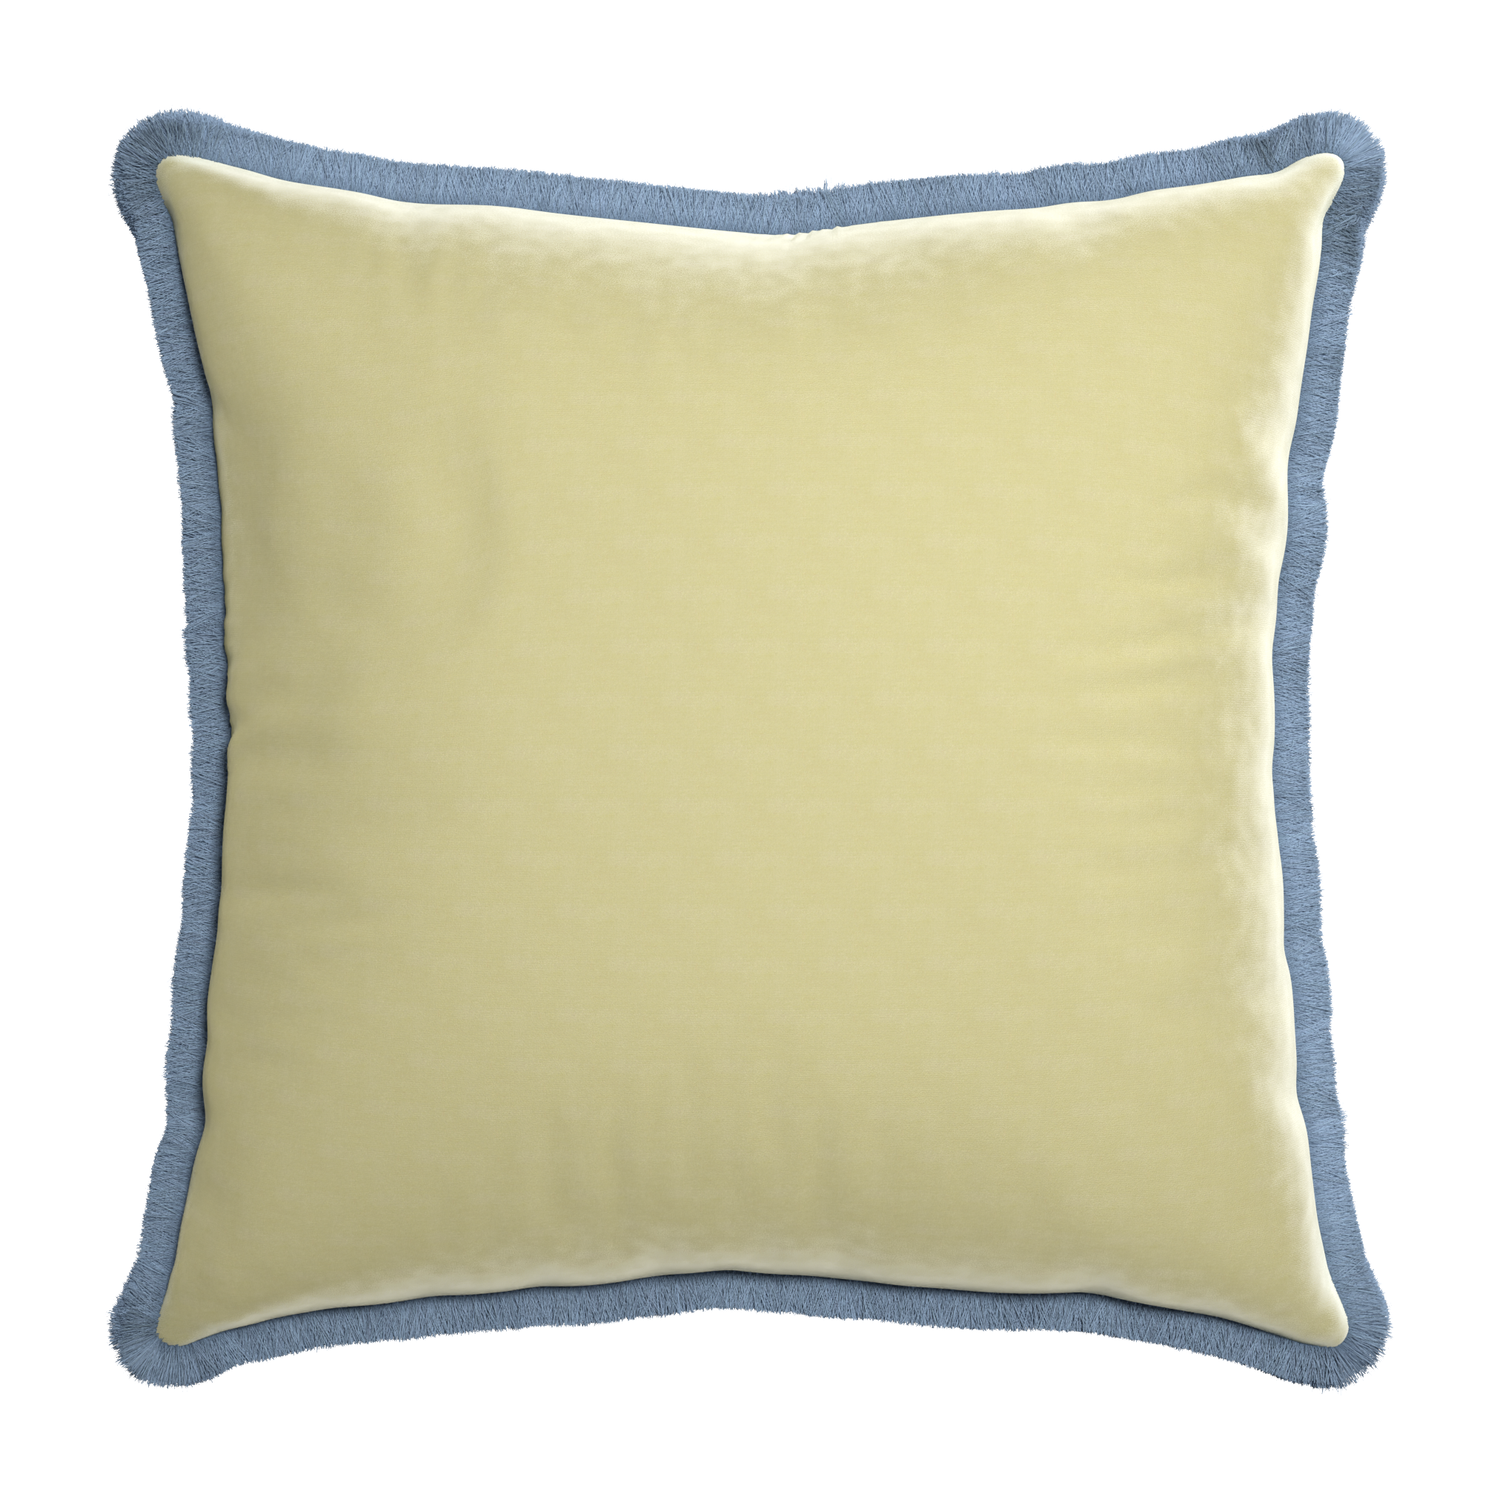 Euro-sham pear velvet custom pillow with sky fringe on white background